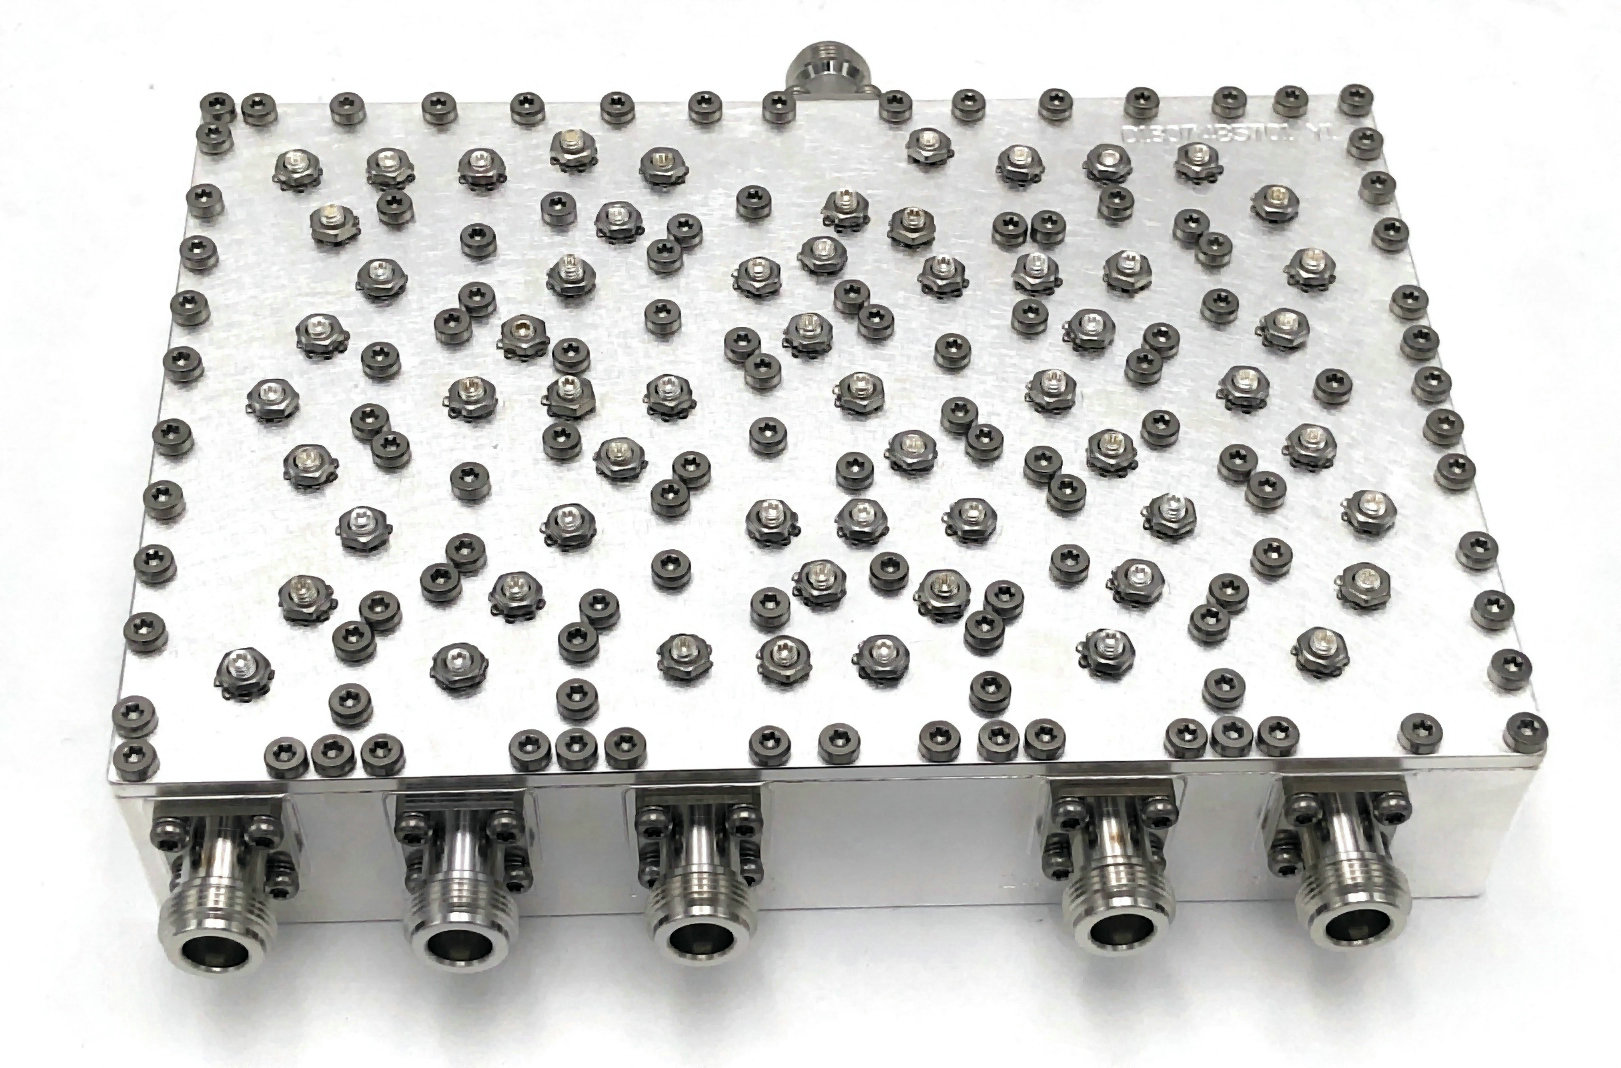 5-контактный разъем NF 824-2570 МГц для объединения полостей с низкой вносимой потерей, малый объем JX-CC5-824M2570M-90N